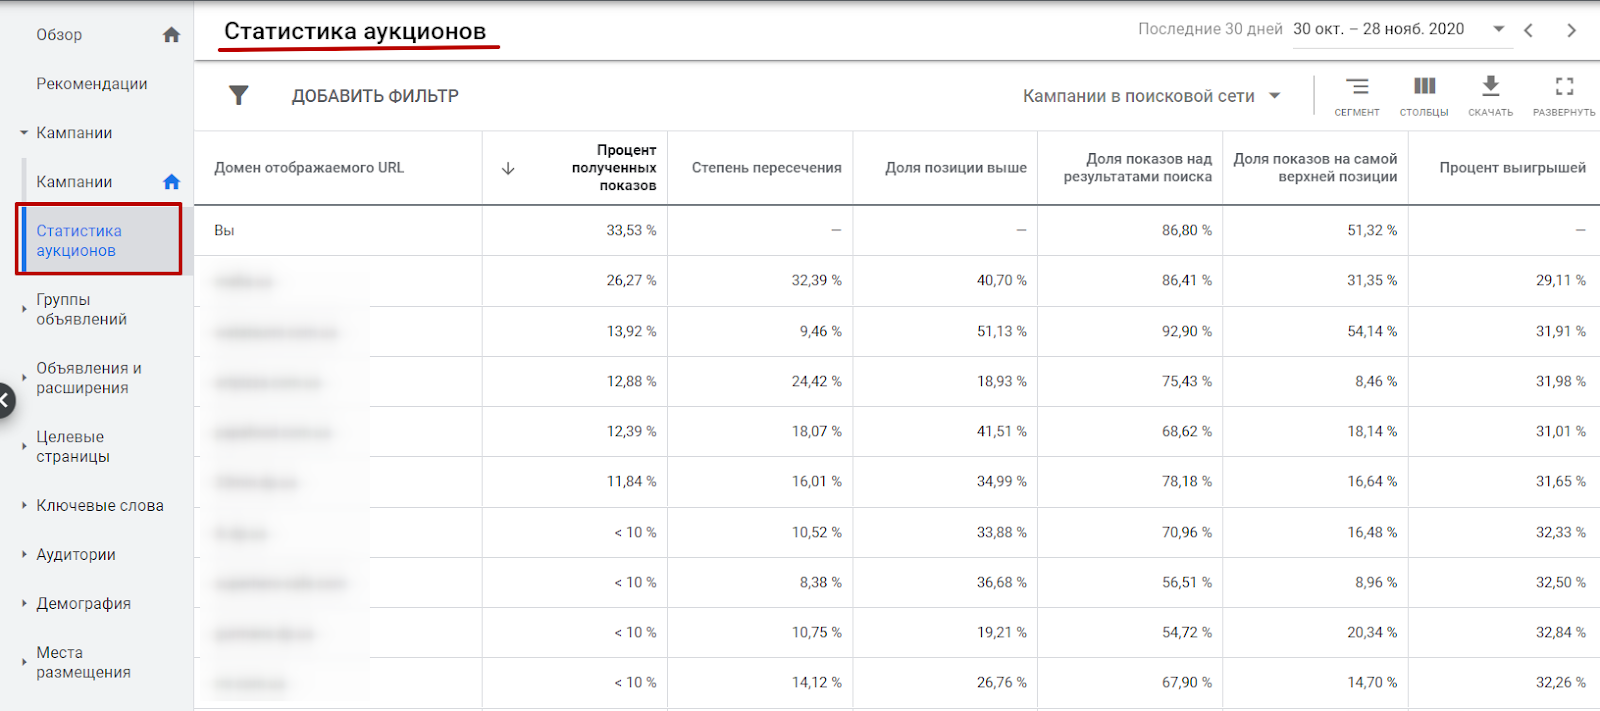 Отчет по статистике аукционов в Google Ads по аккаунту